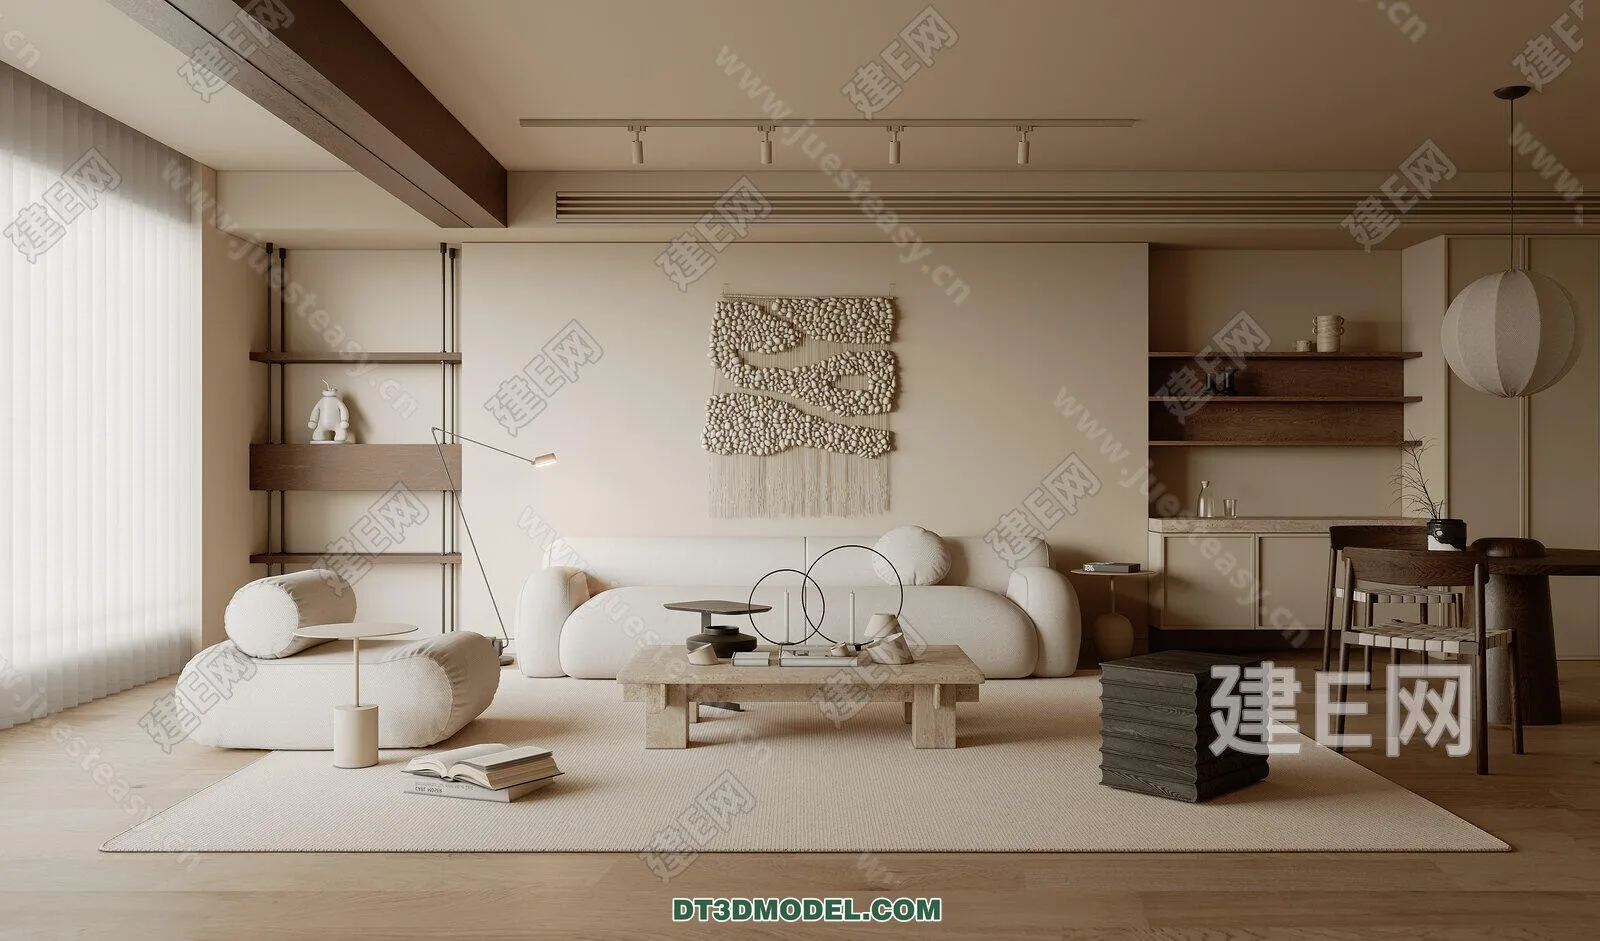 CORONA LIVING ROOM 3D MODELS – 030